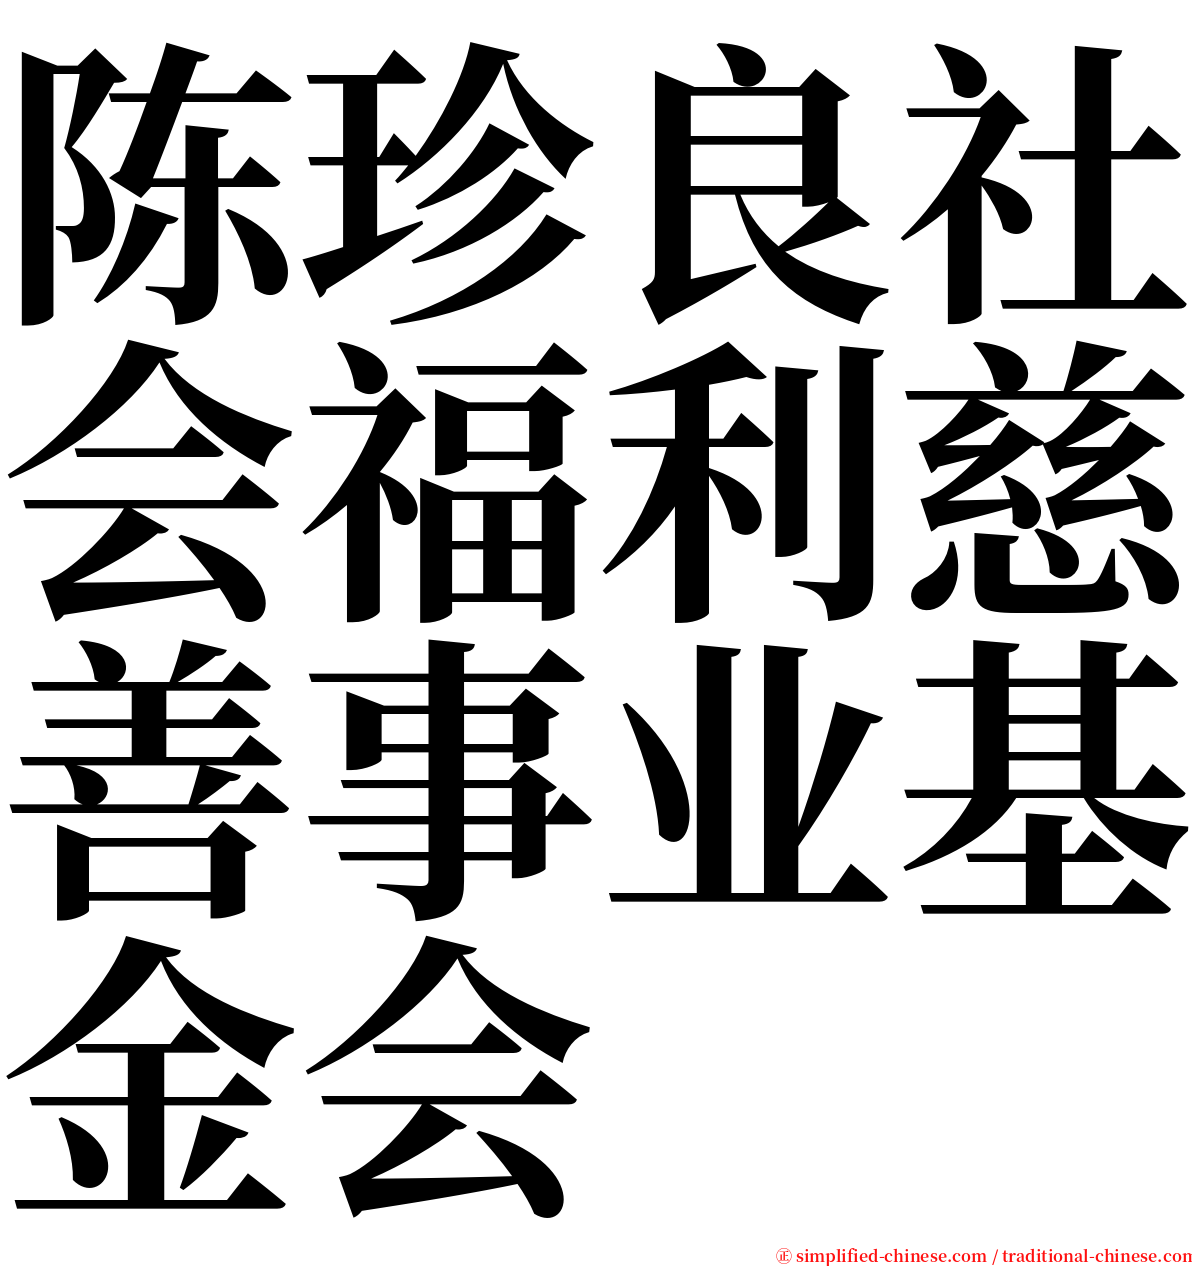 陈珍良社会福利慈善事业基金会 serif font